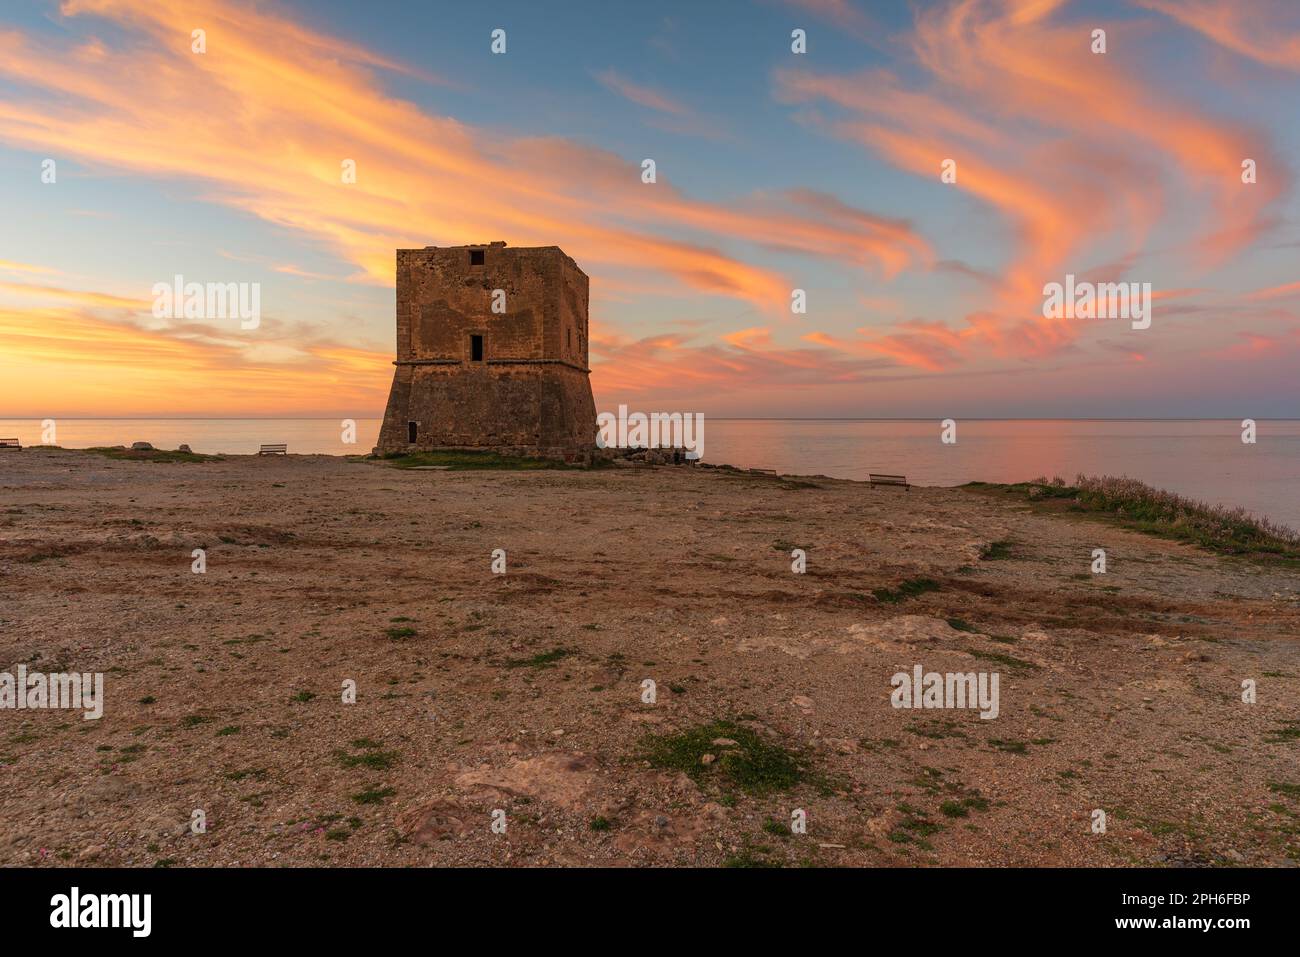 The Saracen tower of Pozzillo at dusk, Sicily Stock Photo